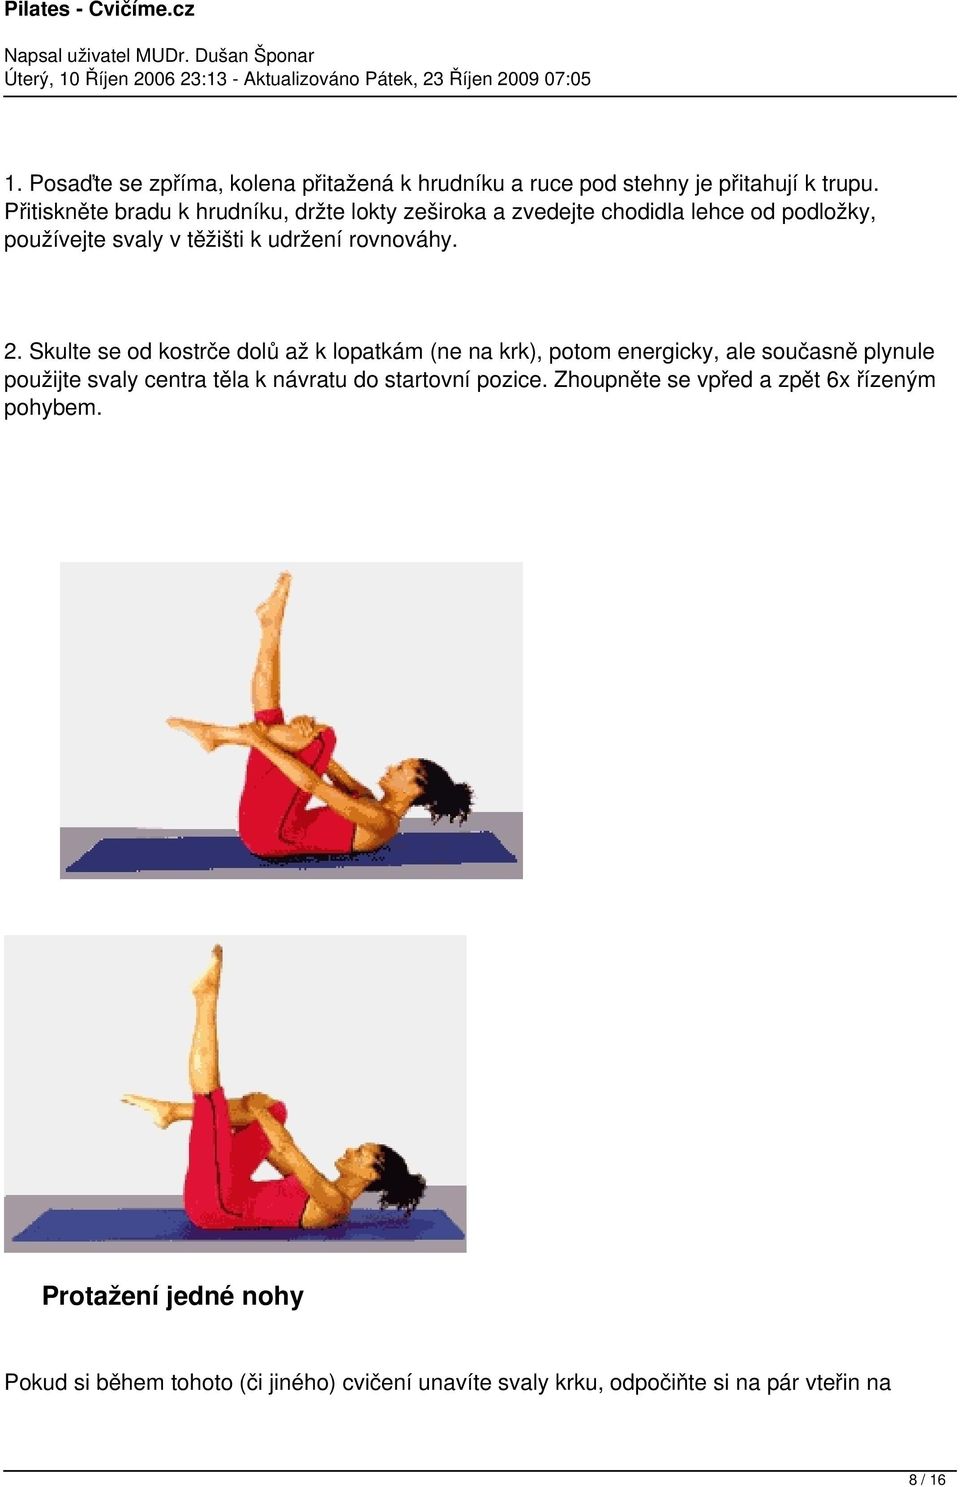 2. Skulte se od kostrče dolů až k lopatkám (ne na krk), potom energicky, ale současně plynule použijte svaly centra těla k návratu do